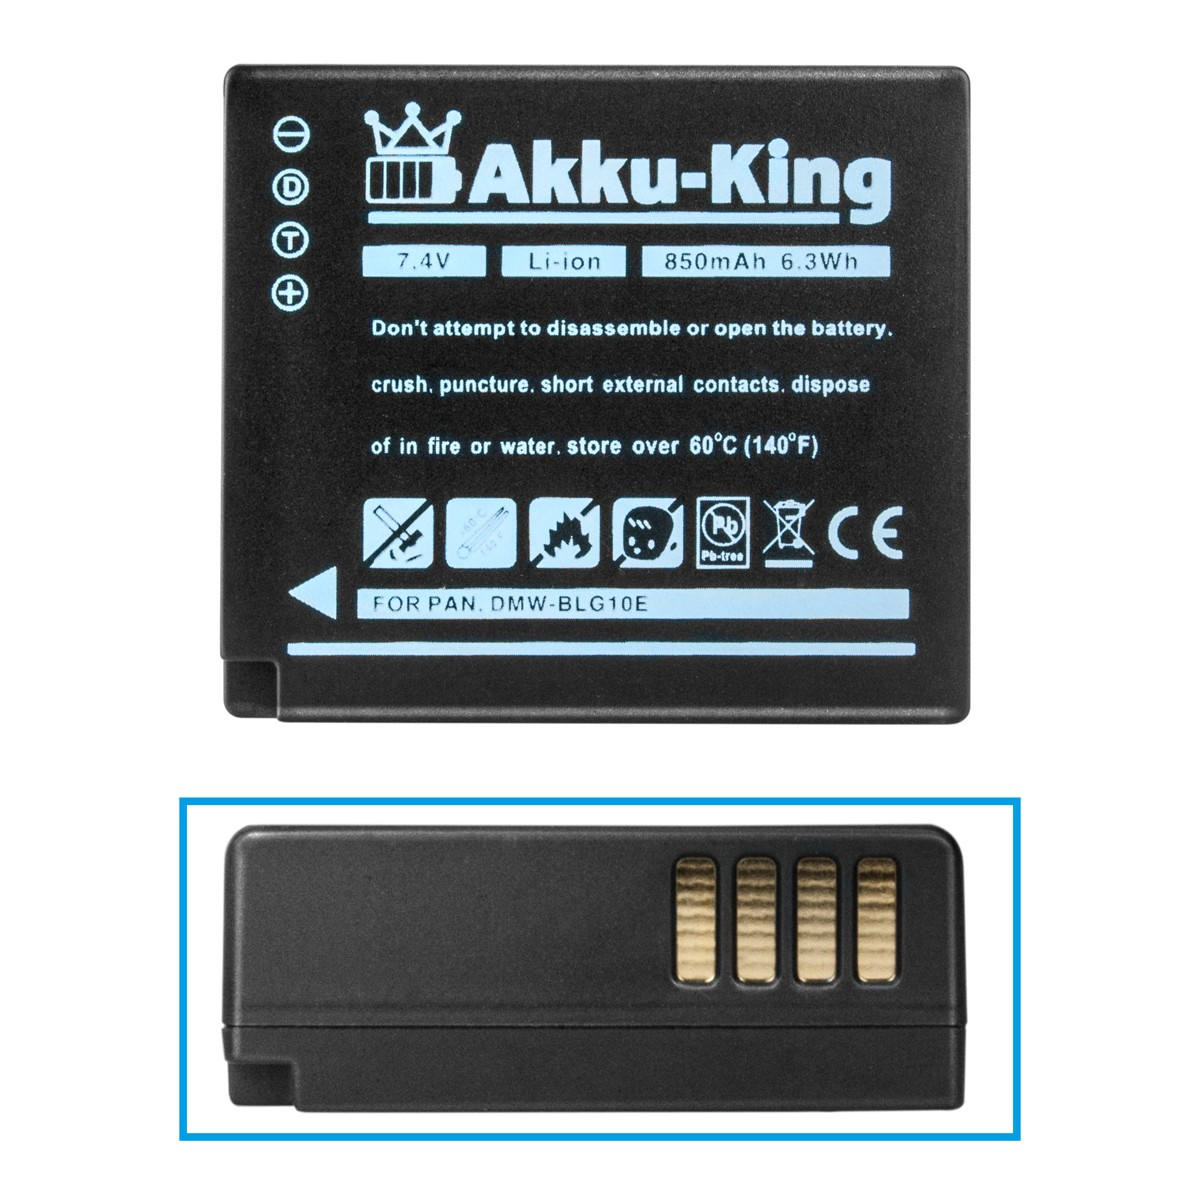 mit AKKU-KING 7.4 kompatibel Kamera-Akku, DMW-BLG10E Volt, 850mAh Li-Ion Panasonic Akku